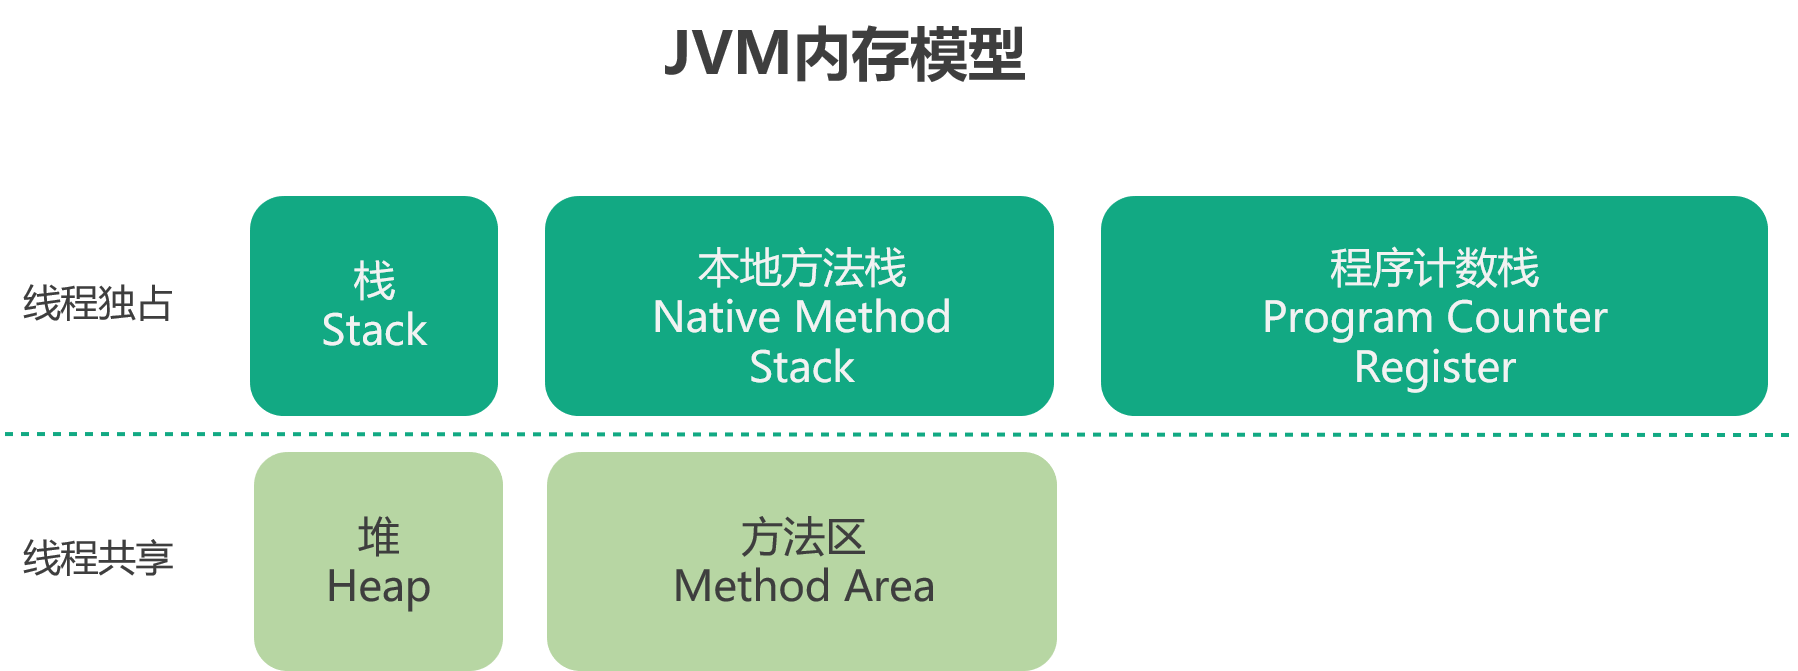 Java JVM内存模型